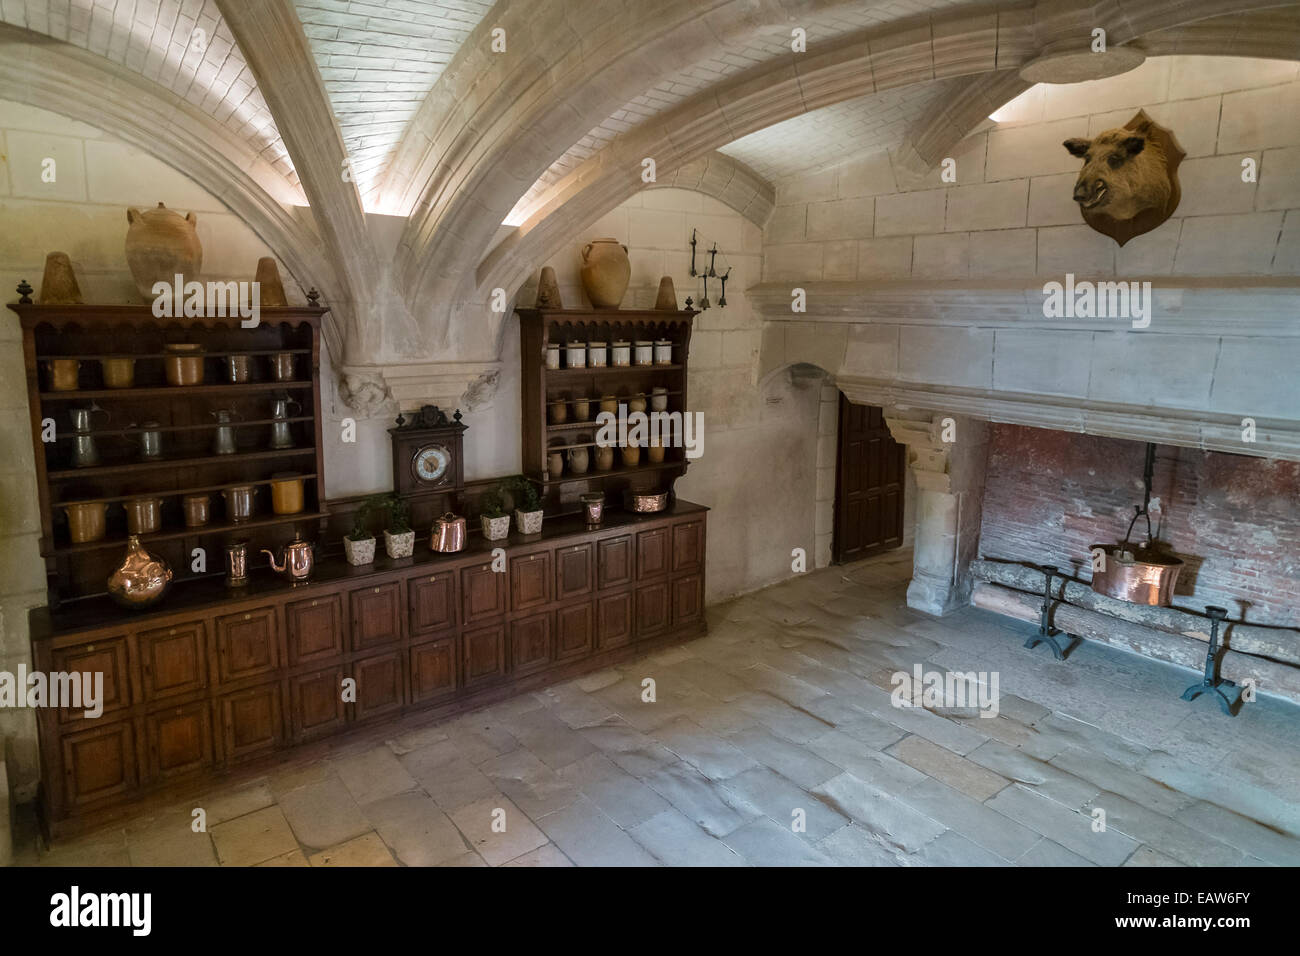 The kitchen at Chateau de Chenonceau castle, Chenonceaux, Indre-et-Loire, Centre, France Stock Photo